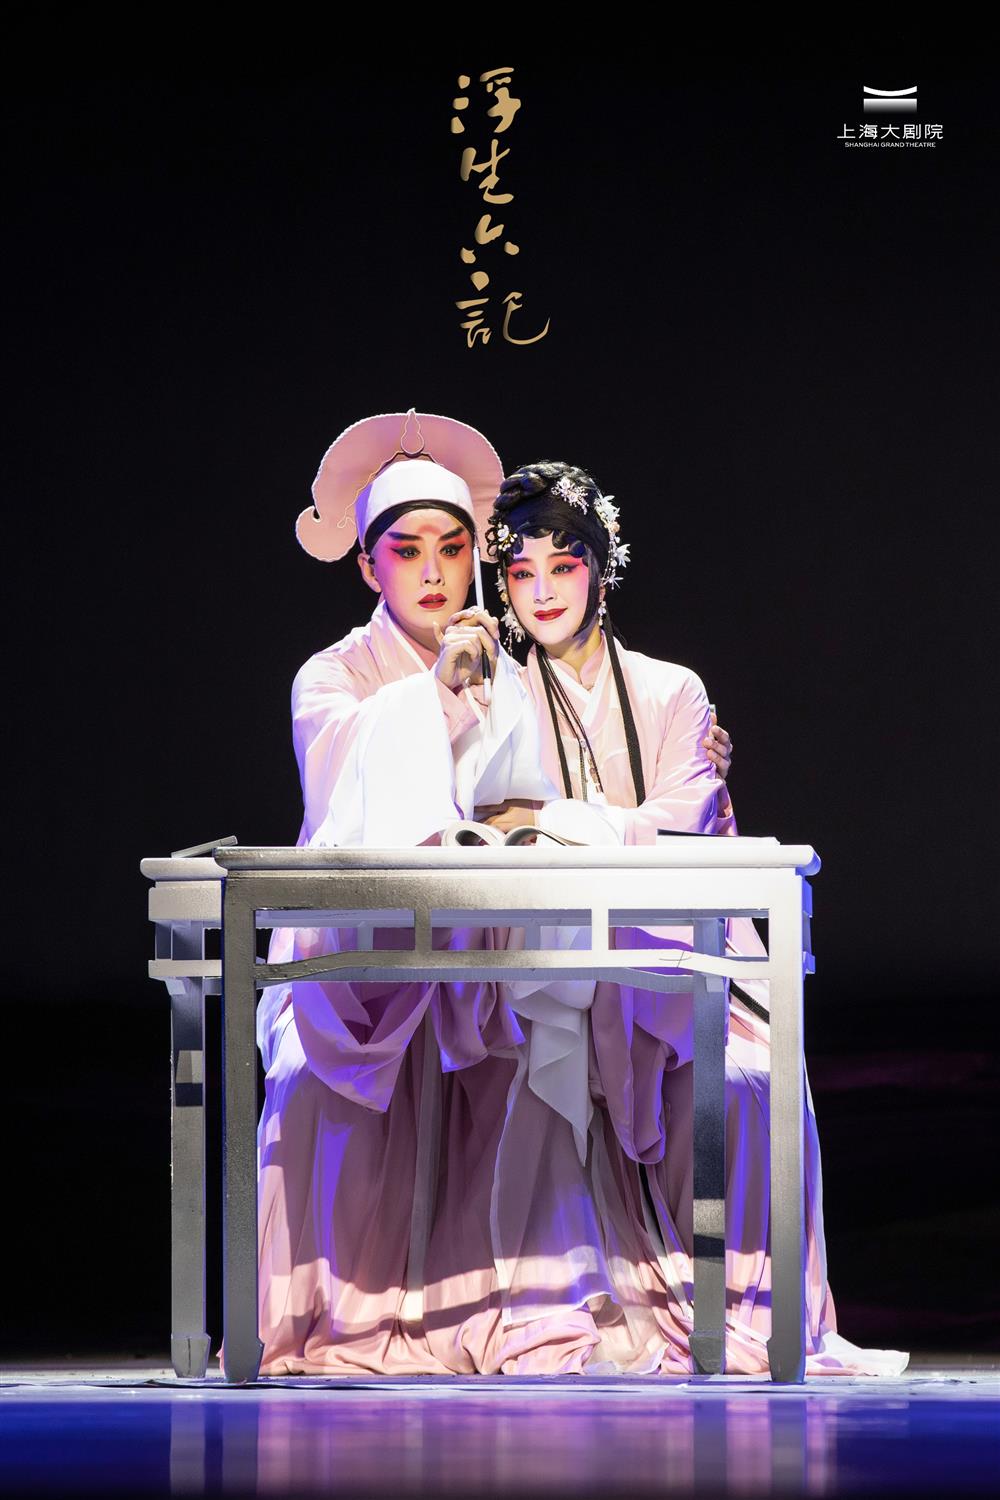 昆曲《浮生六记》再度亮相上海大剧院,367万人次播放量后美学|梅花奖|昆曲